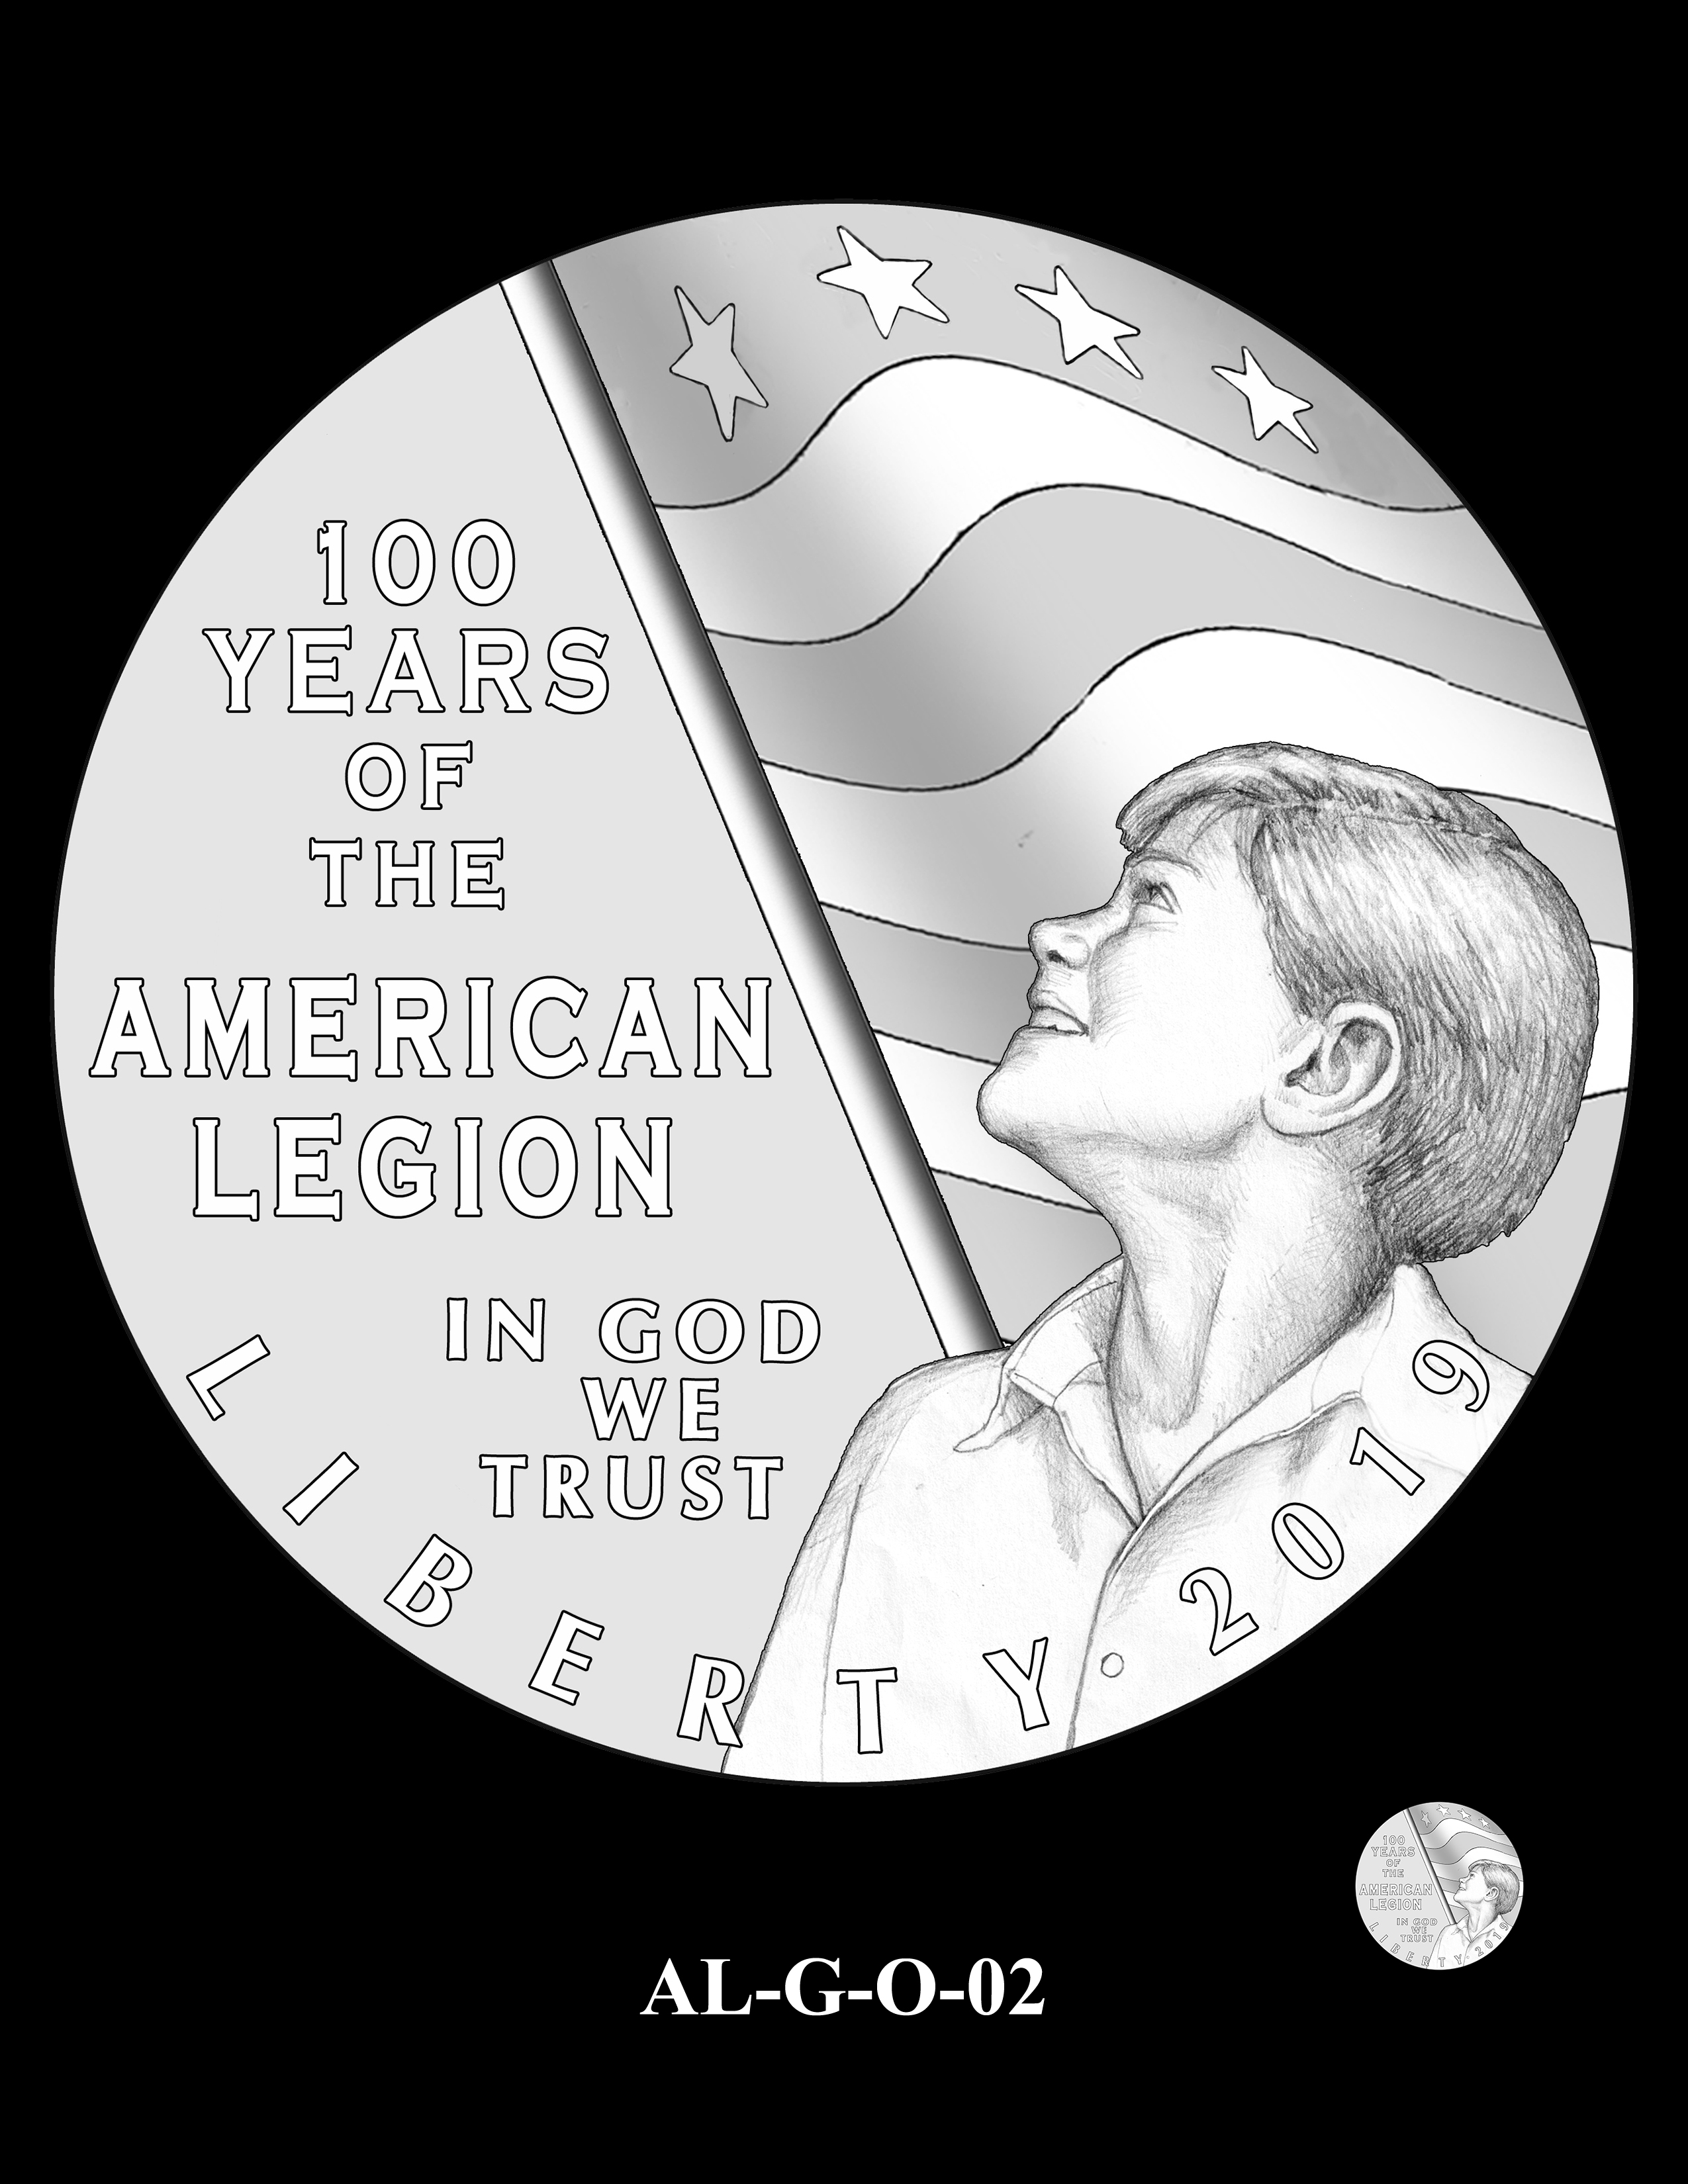 AL-G-O-02 -- 2019 American Legion 100th Anniversary Commemorative Coin Program - Gold Obverse